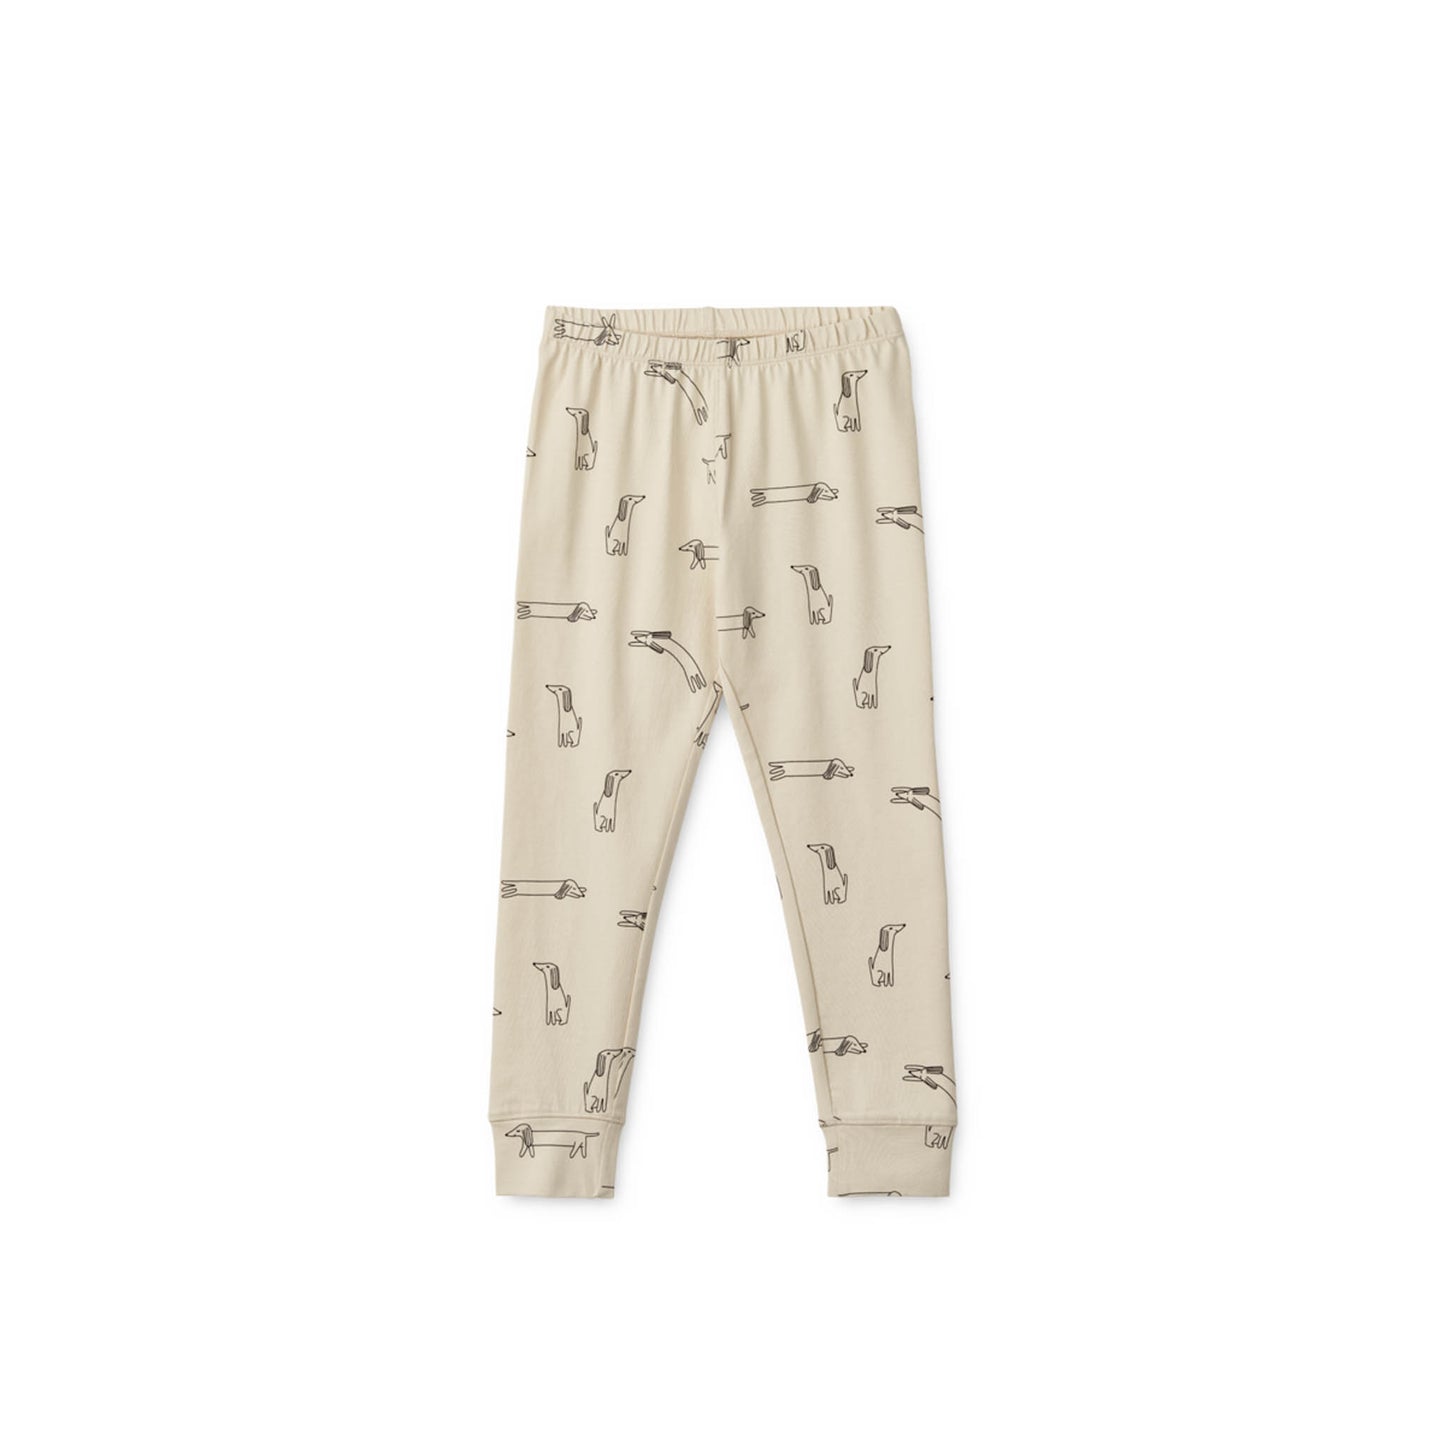 Liewood - Pajamas "Wilhelm pajamas set" | sandy